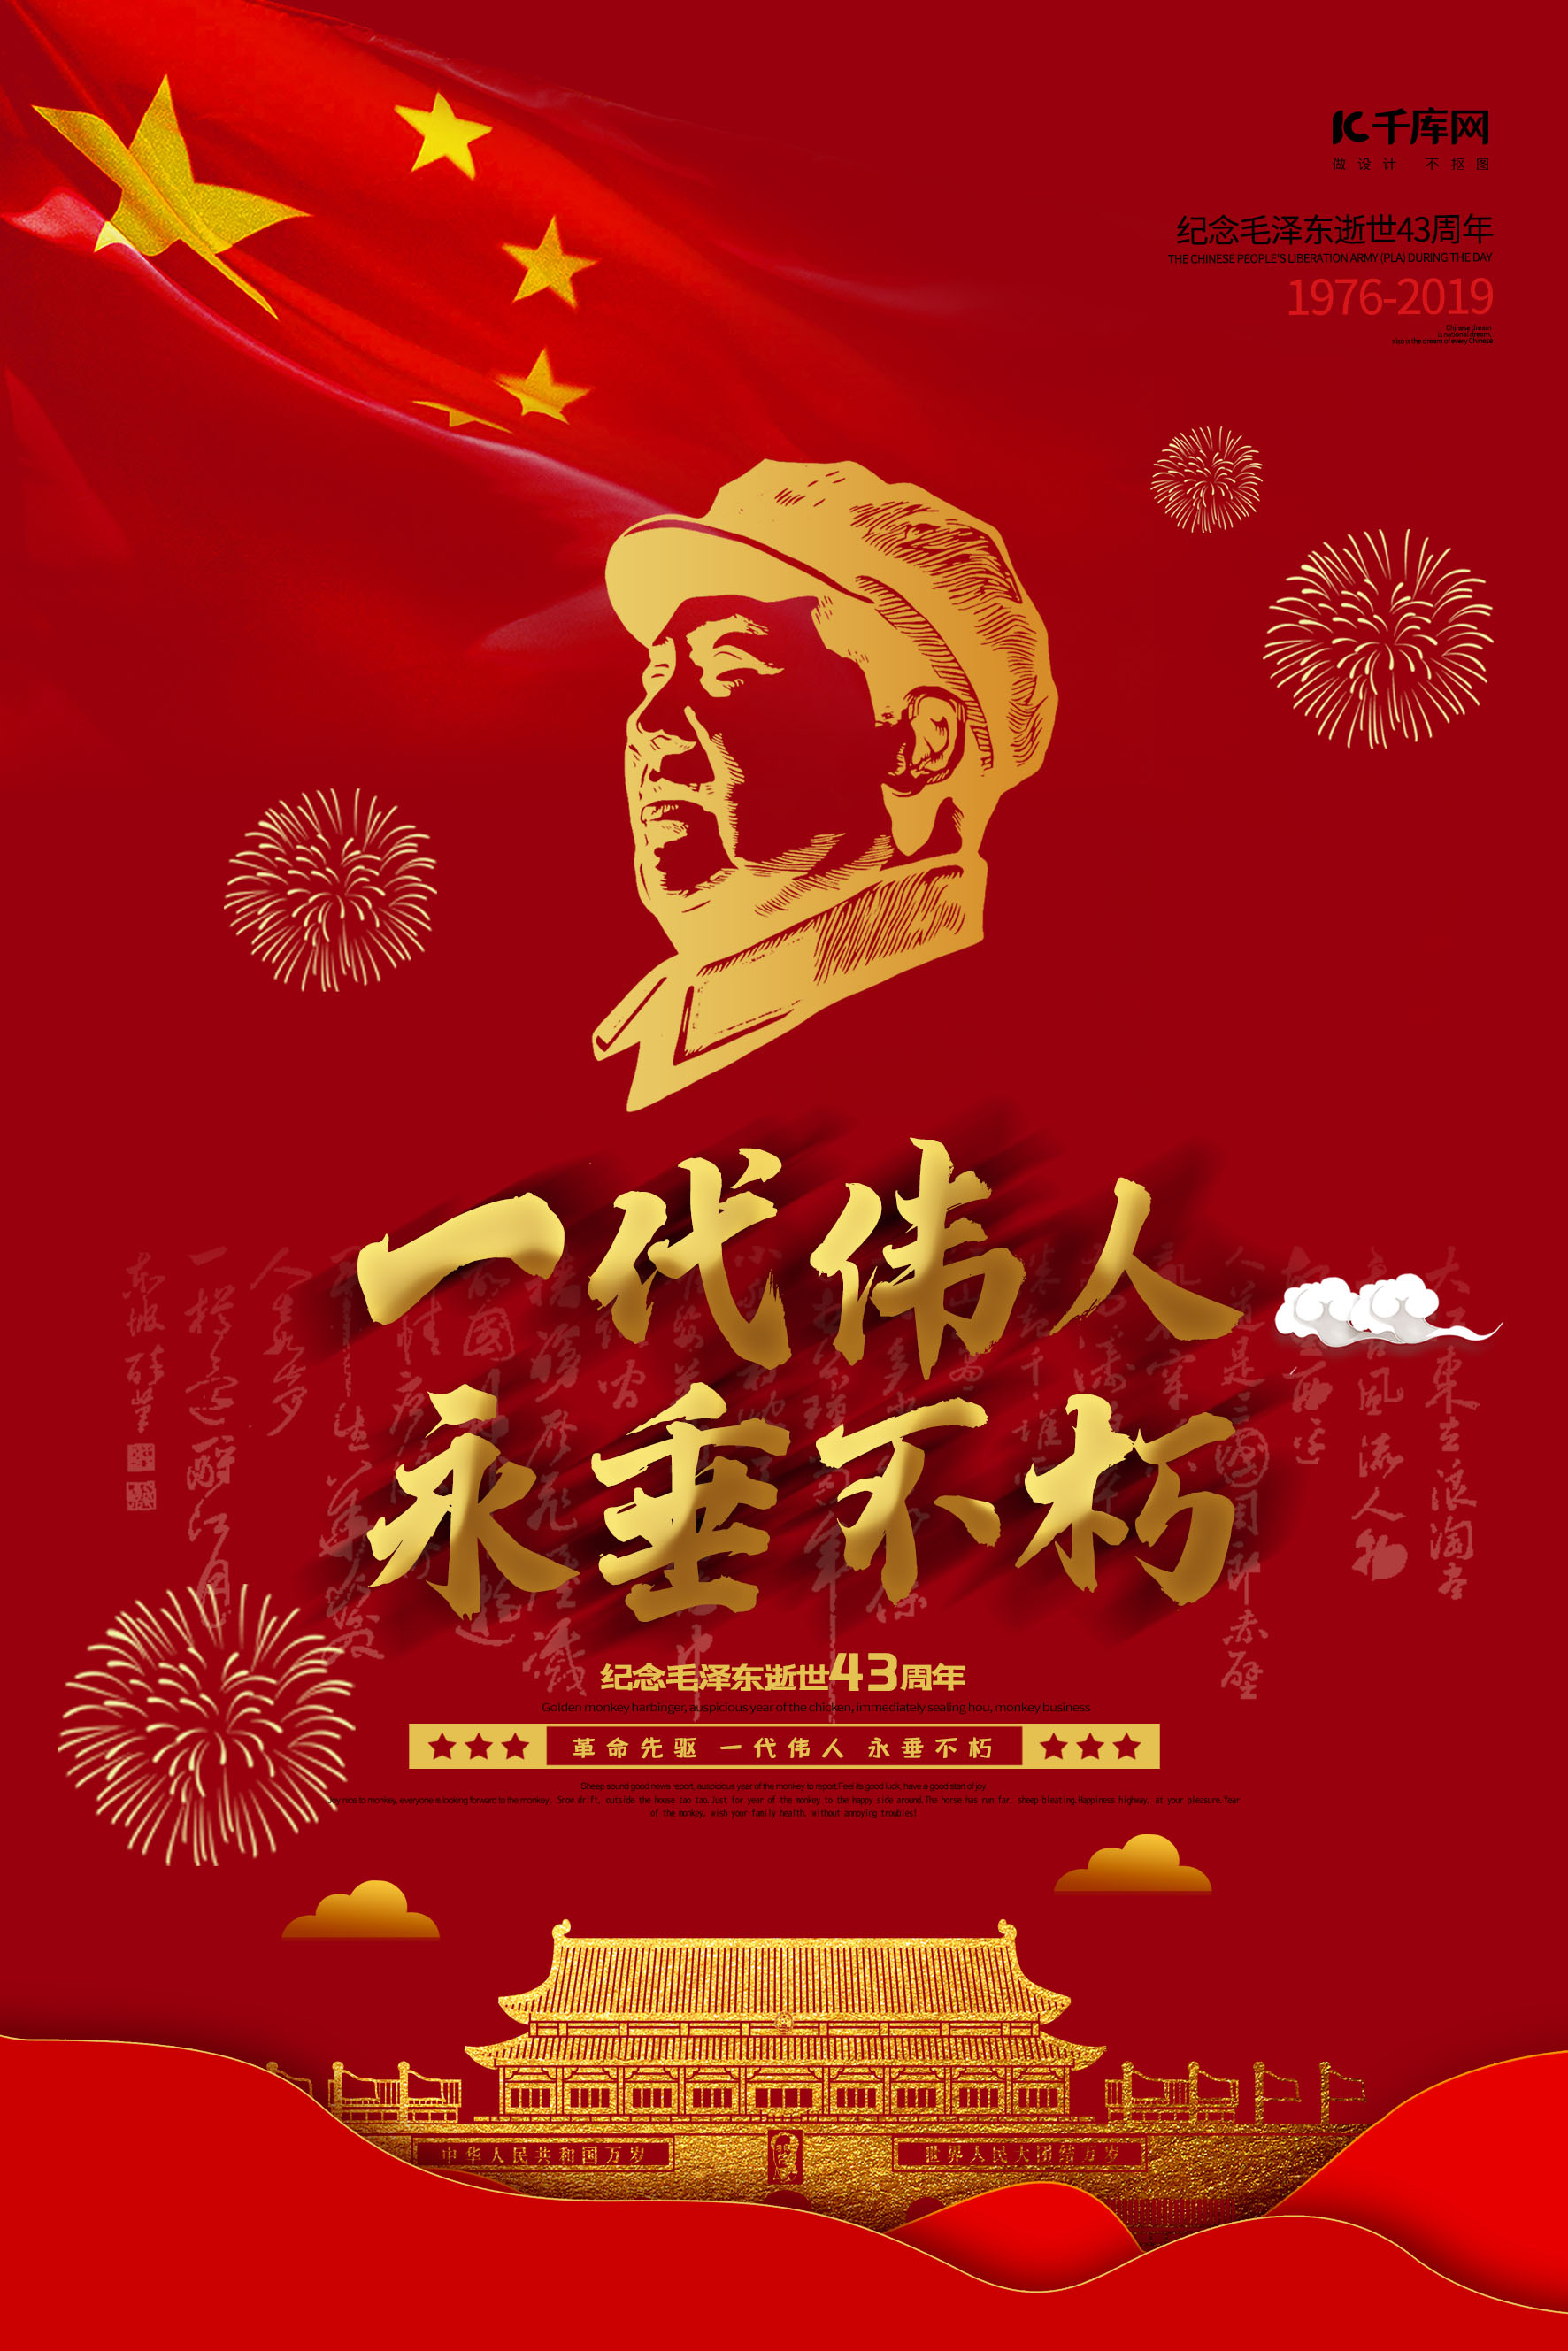 1945年8月28日，毛泽东抵达重庆的经典瞬间：挥手之间